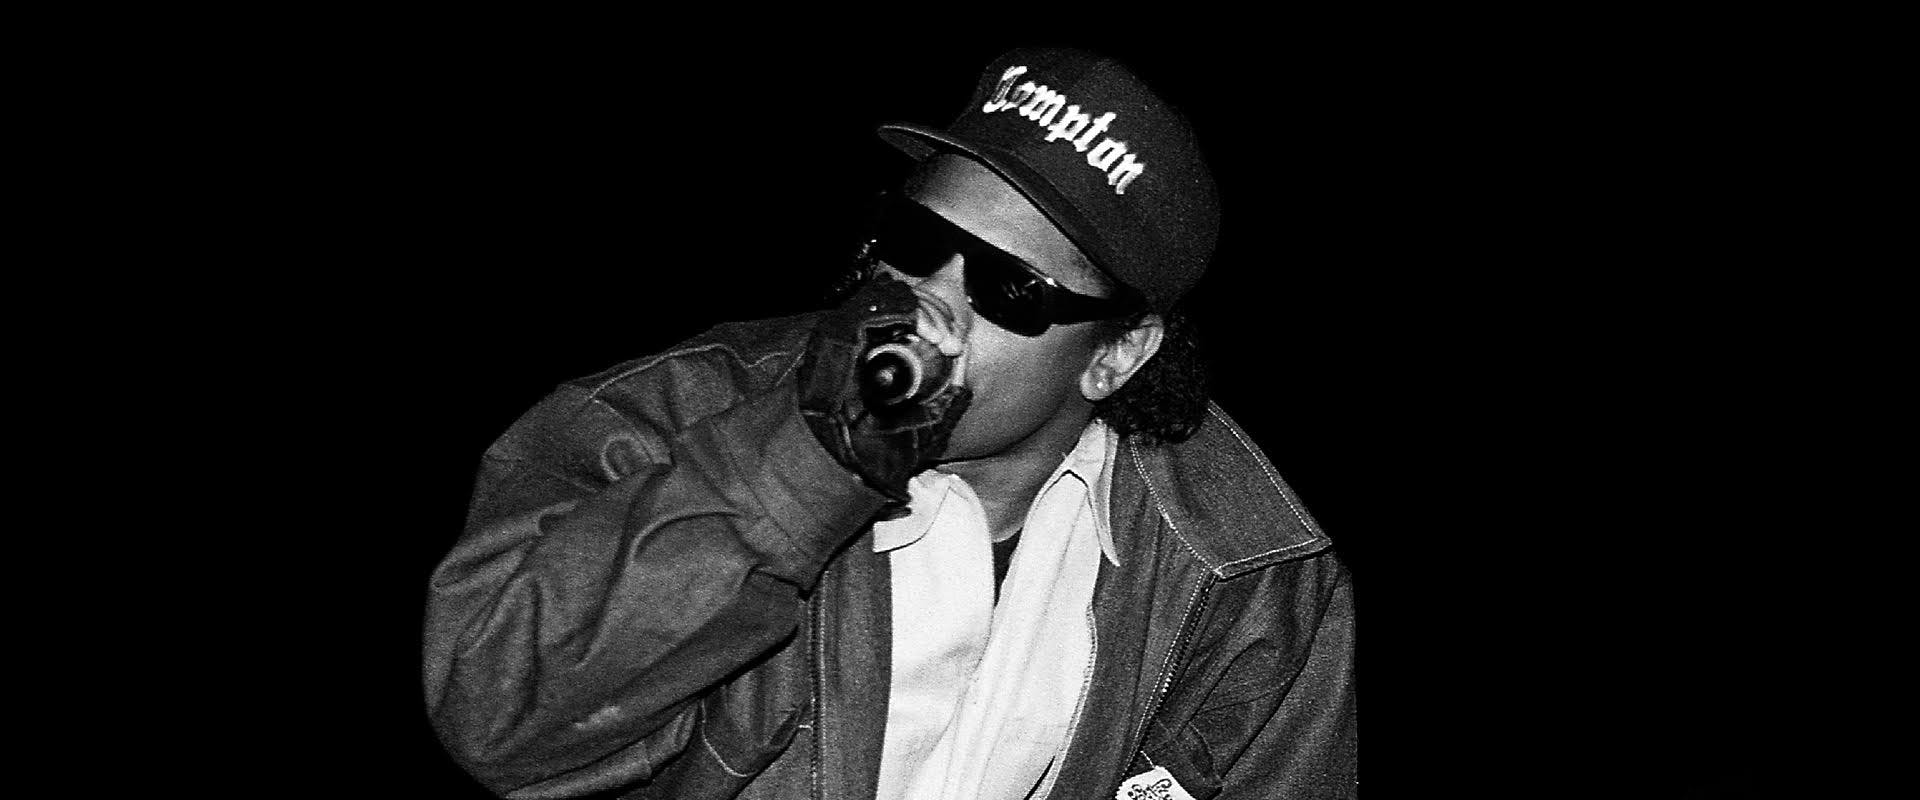 Eazy-E Wallpaper Explore more American Rapper, Eazy-E, Professionally,  Ruthless Records, Straight Outta Compton wa…